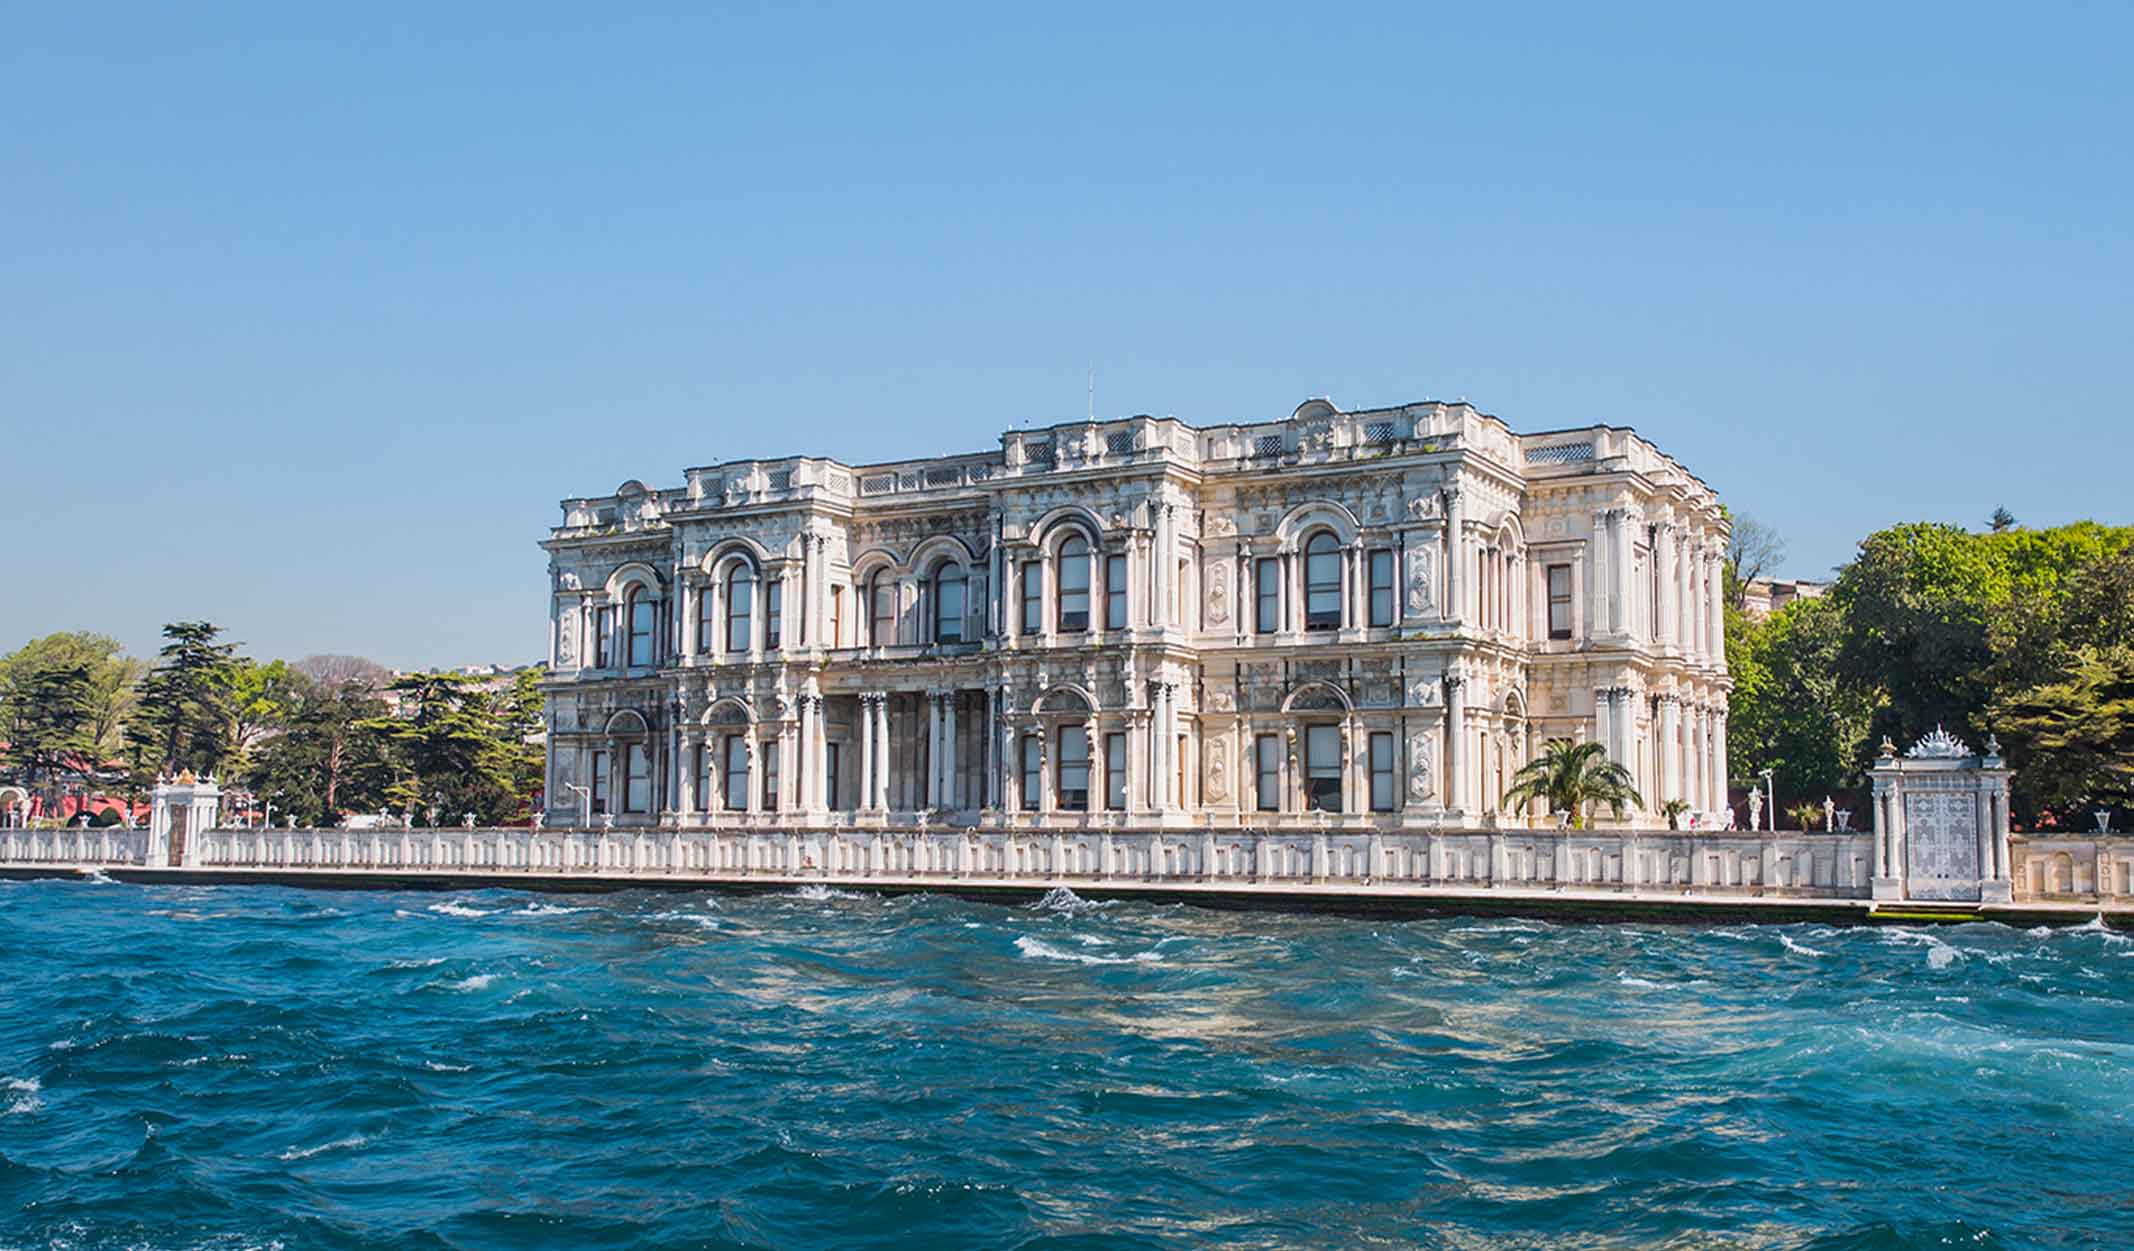 Бейлербейи - дворец 19 века в Стамбуле, служивший летней резиденцией и местом размещения гостей султанов Османской империи Сегодня это дворец-музей с залами, садом и террасой у вод Босфора